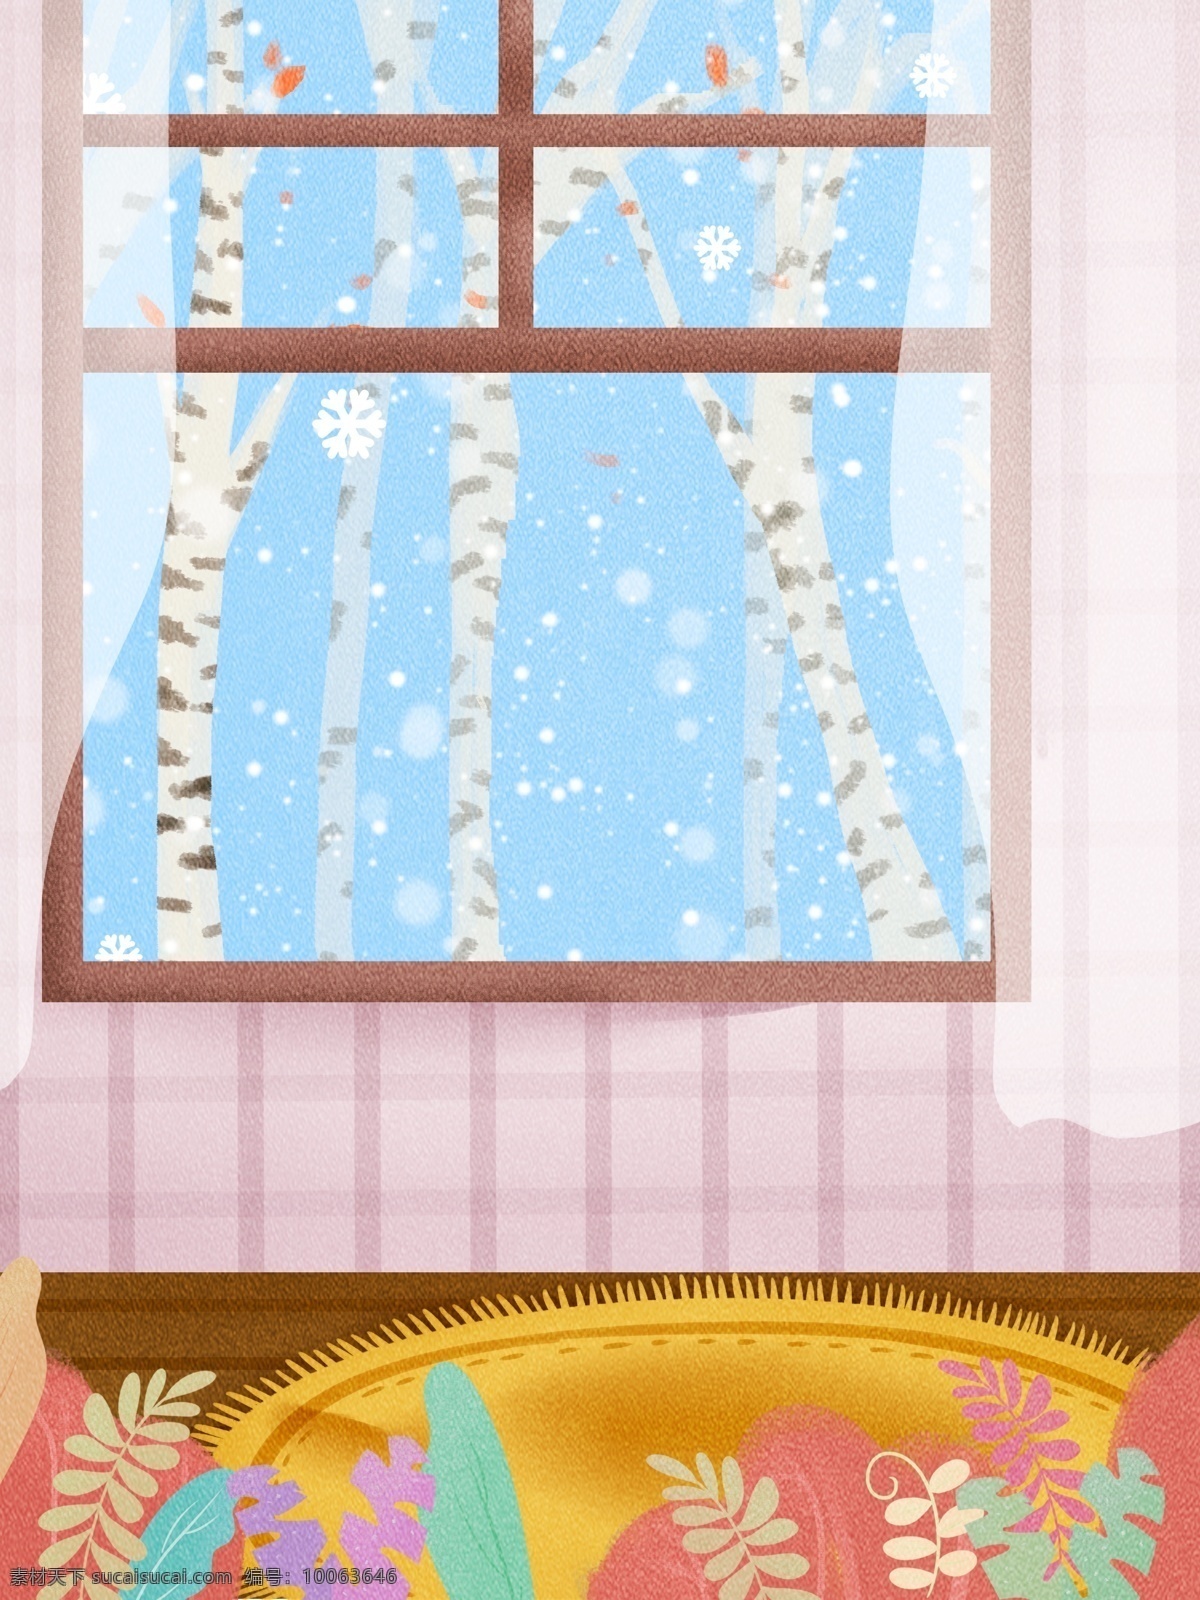 冬季 小雪 窗外 风景 背景 窗外风景 窗帘 传统节气 小雪节气 温馨室内布置